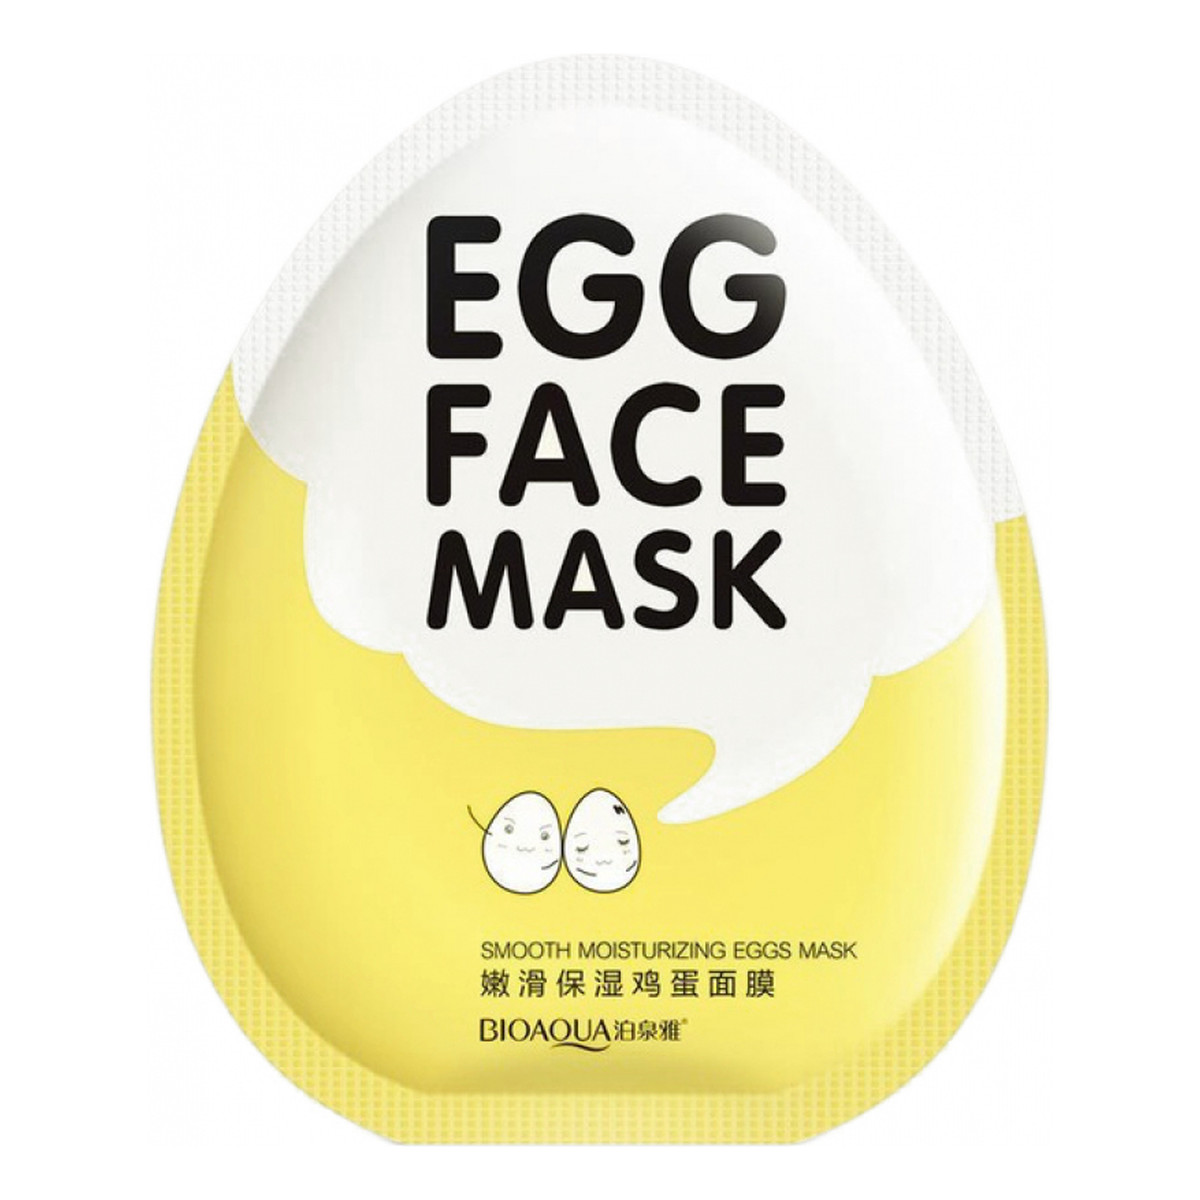 Bioaqua Egg Nawilżająca Maska W Płacie Z Proteinami 30g